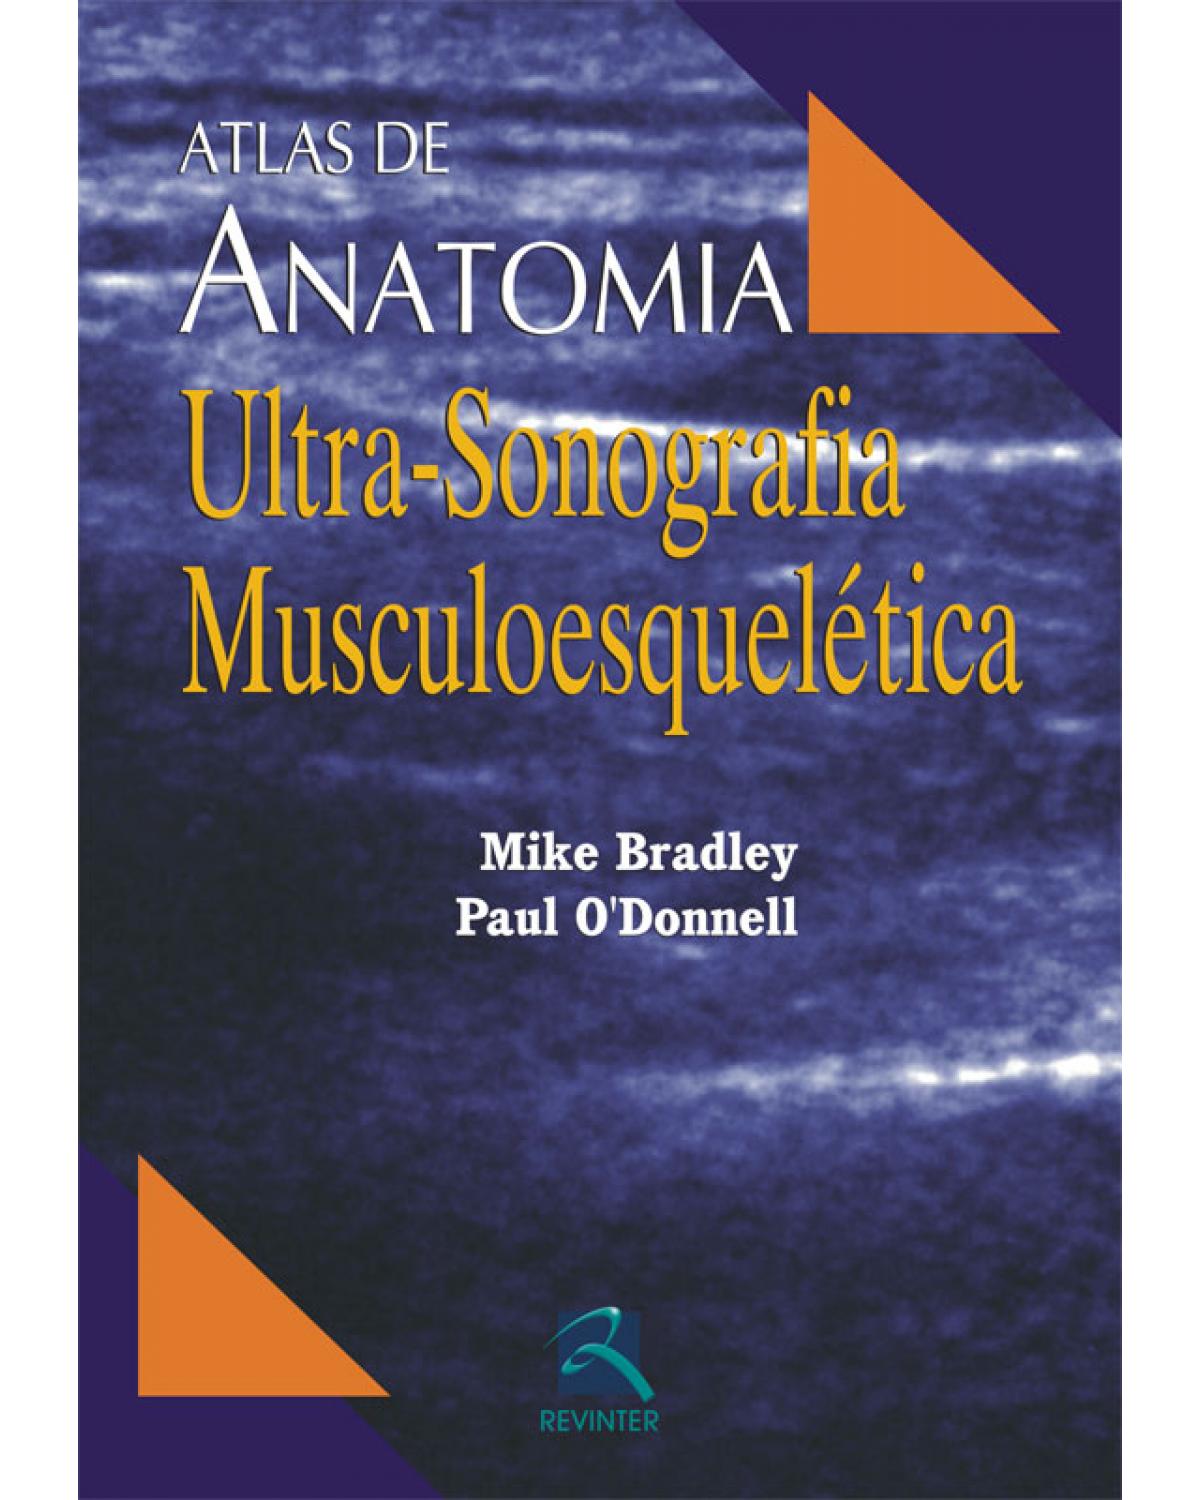 Atlas de anatomia - ultra-sonografia musculoesquelética - 1ª Edição | 2007